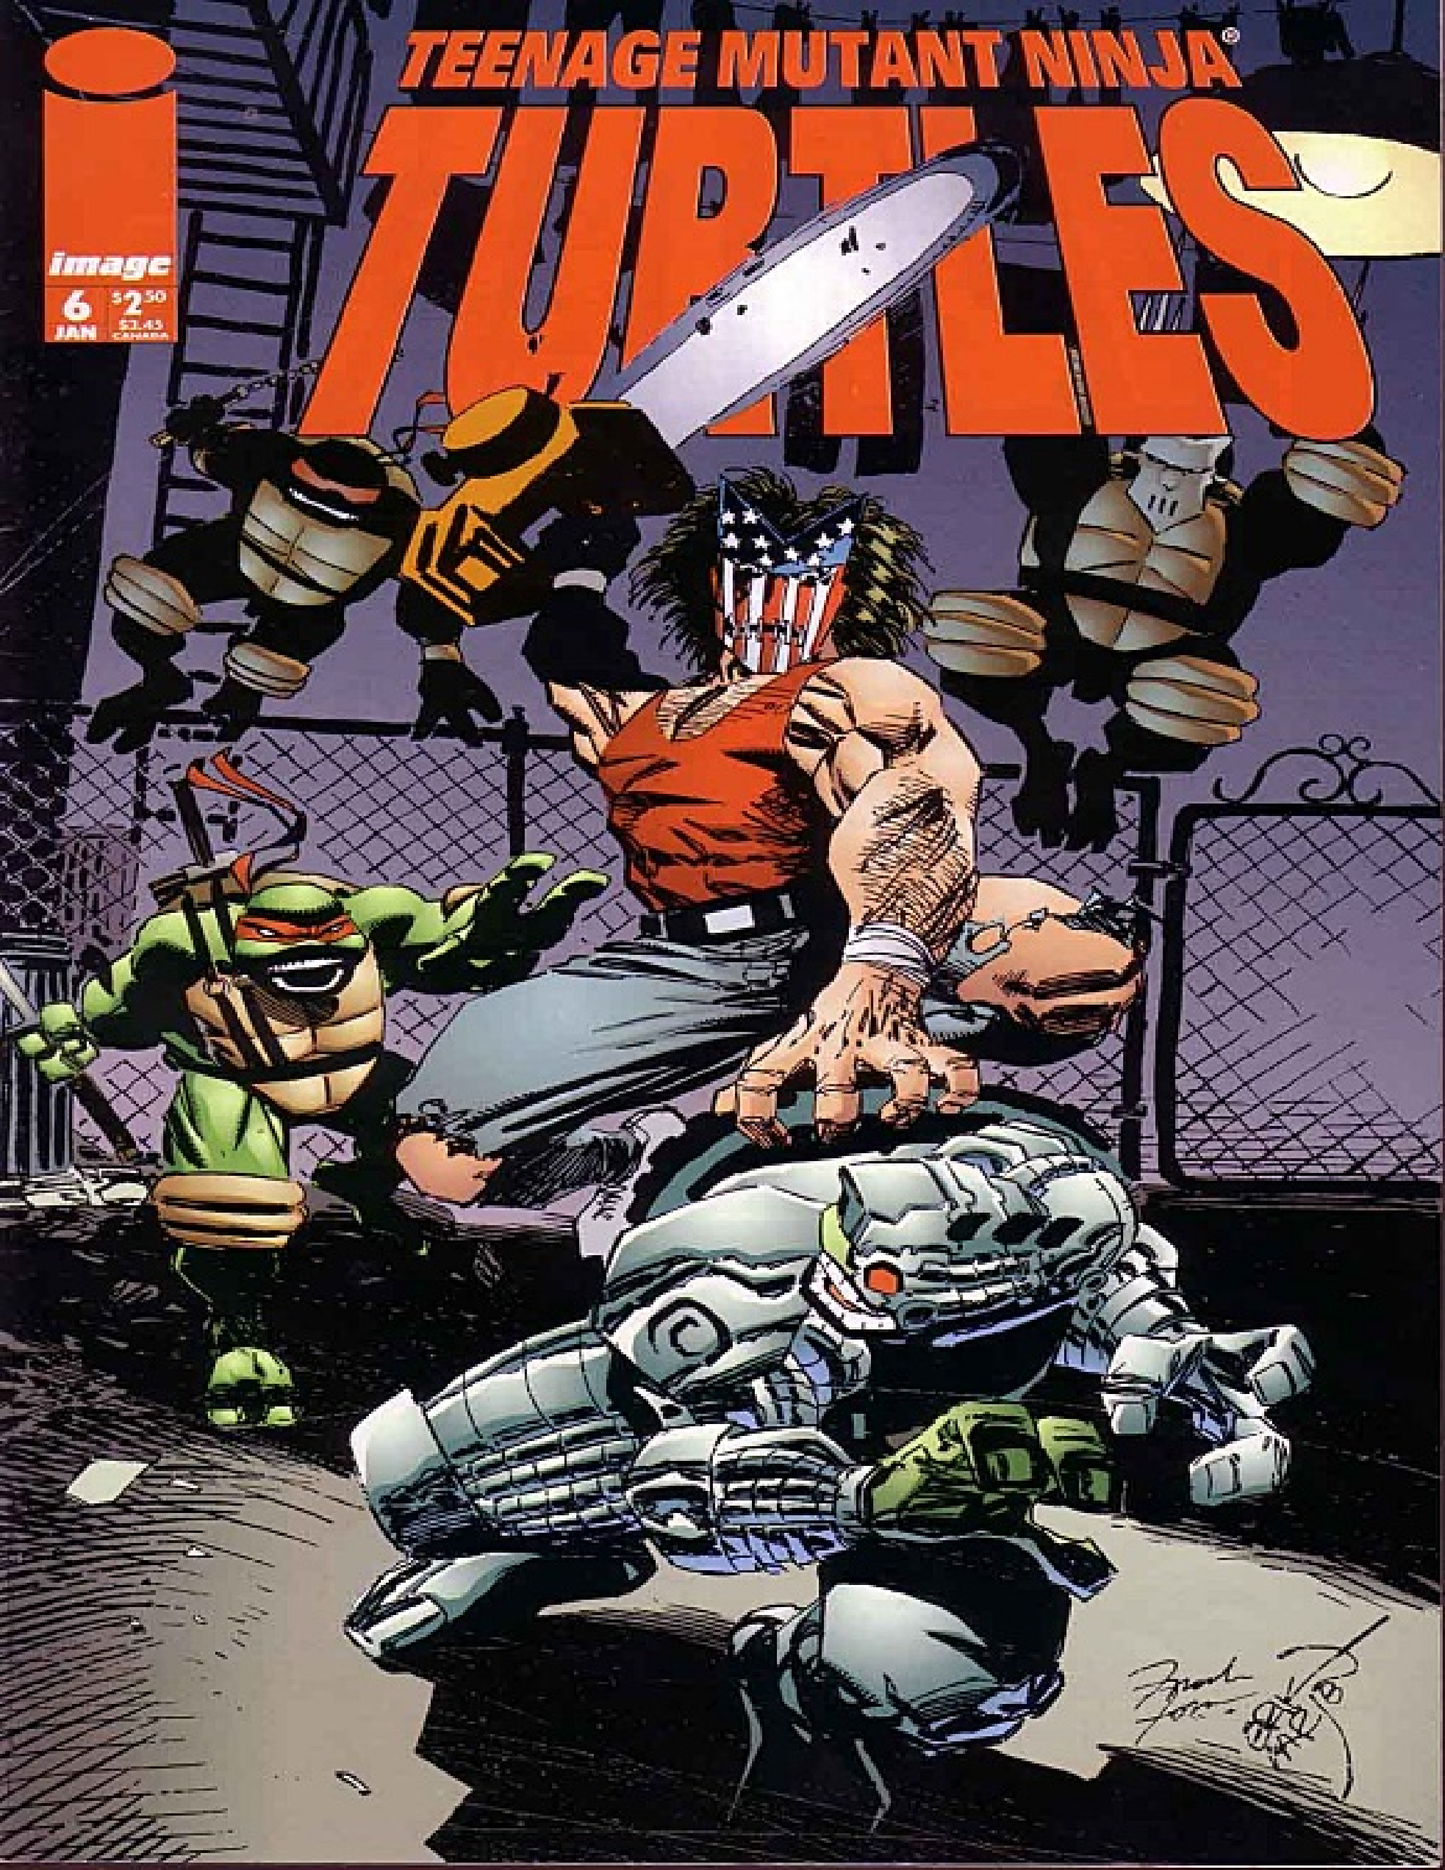 Teenage Mutant Ninja Turtles (1996-1999) | E-Comic Series